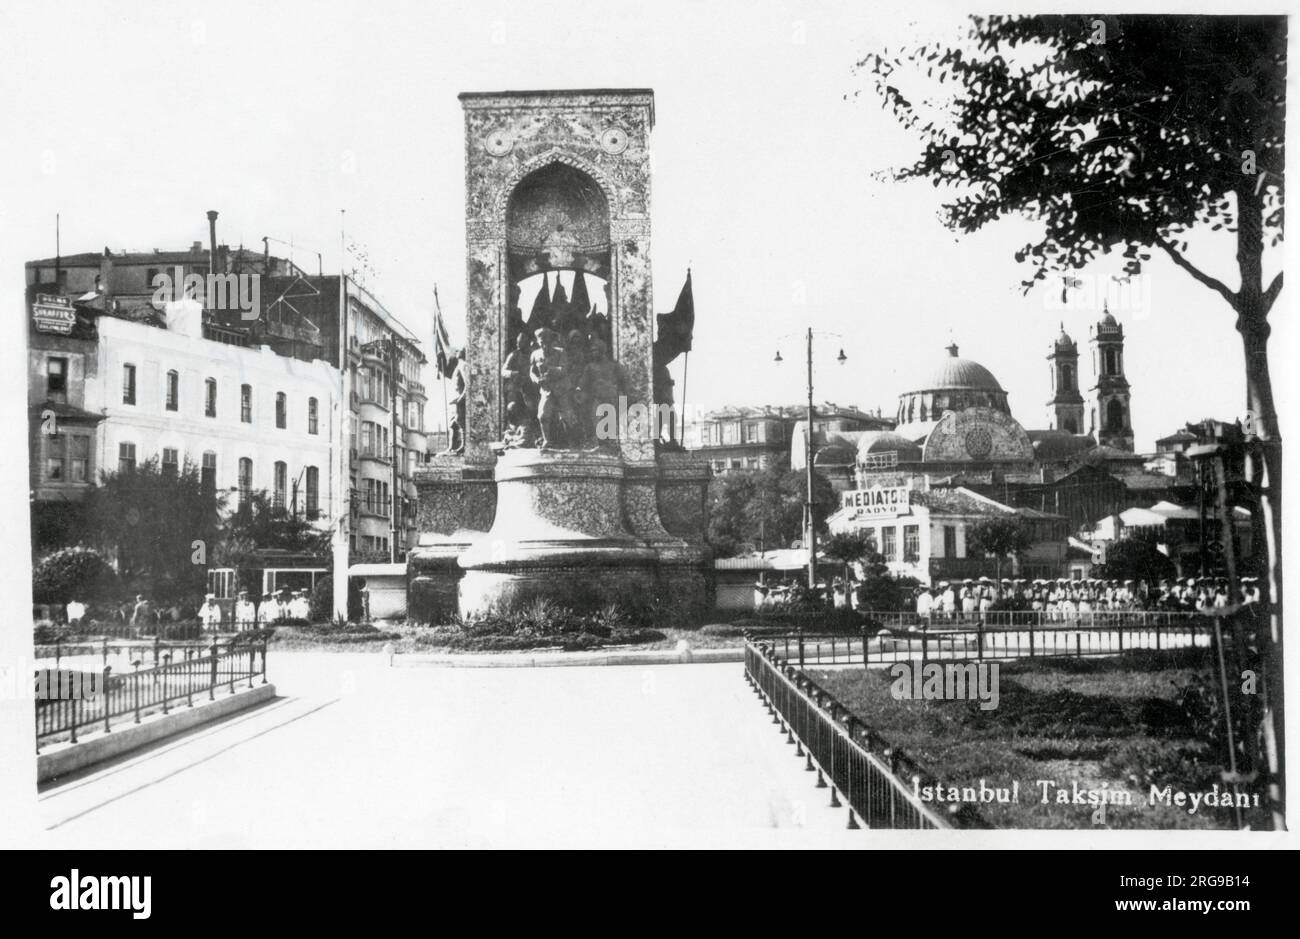 Il Monumento della Repubblica è un monumento notevole situato in Piazza Taksim a Istanbul, in Turchia, per commemorare la formazione della Repubblica turca nel 1923. La Chiesa greco-ortodossa Hagia Triada è visibile dietro la destra. Foto Stock